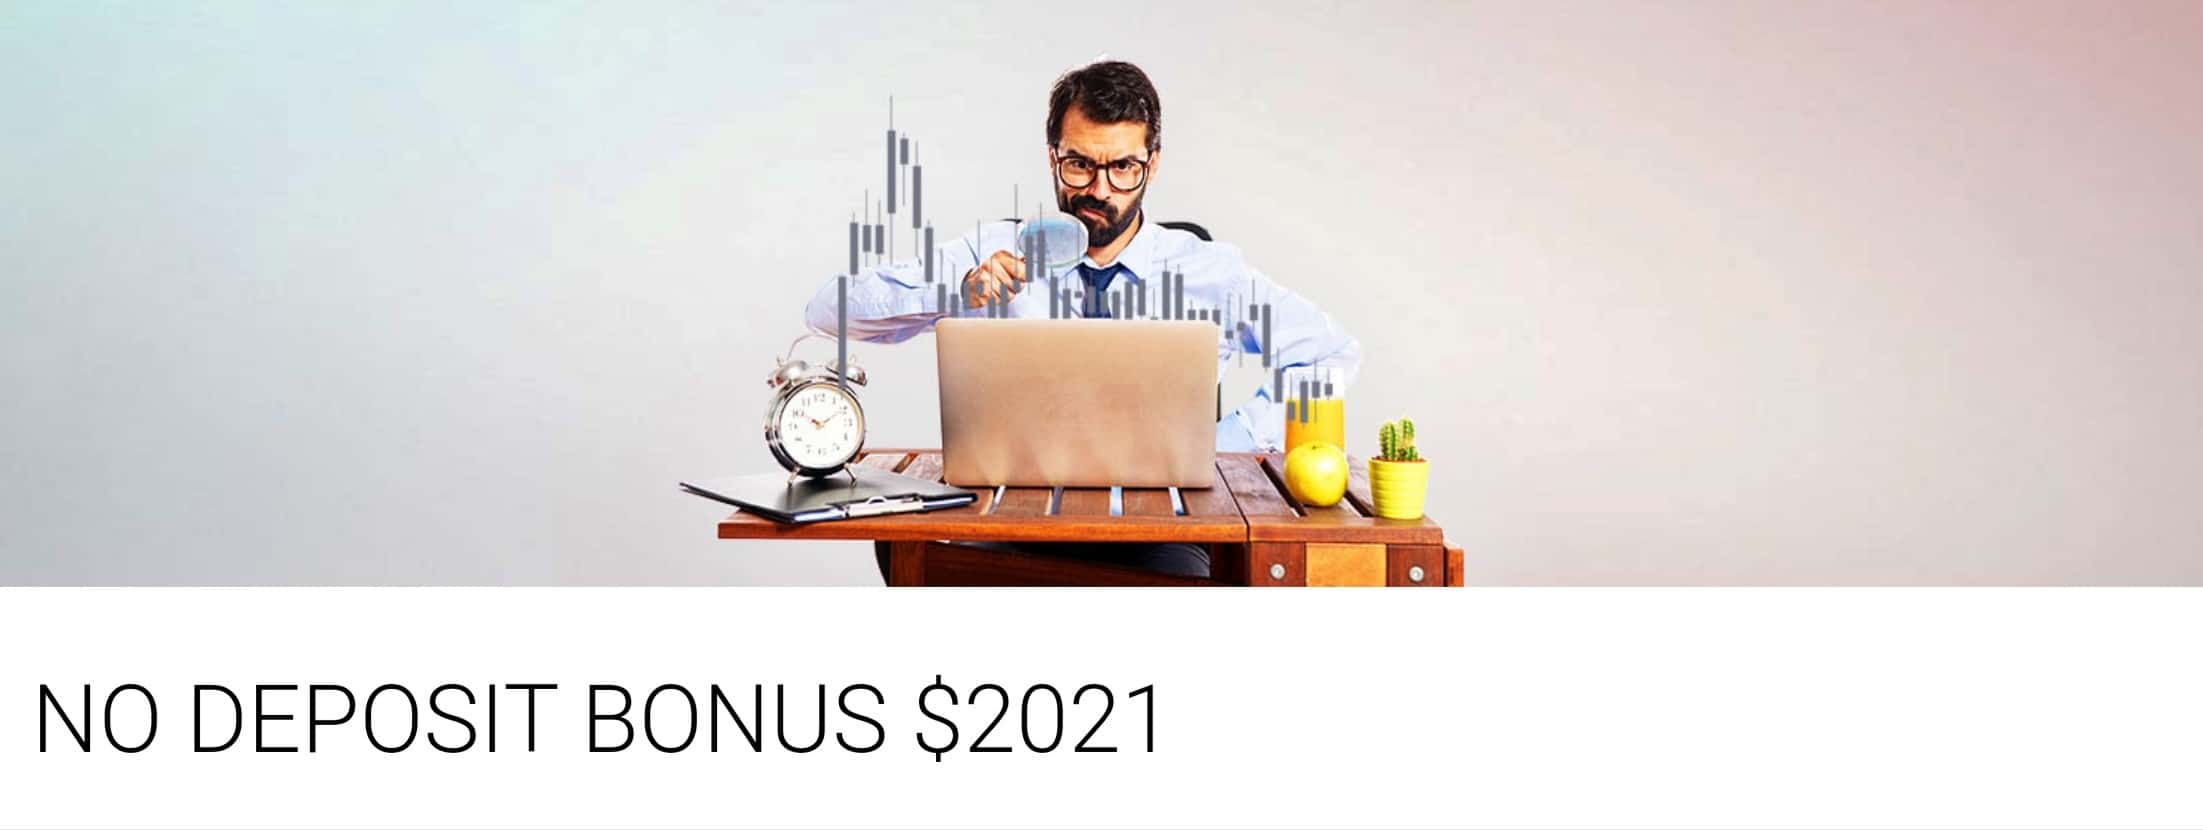 bonusul forex fără depozit 2021